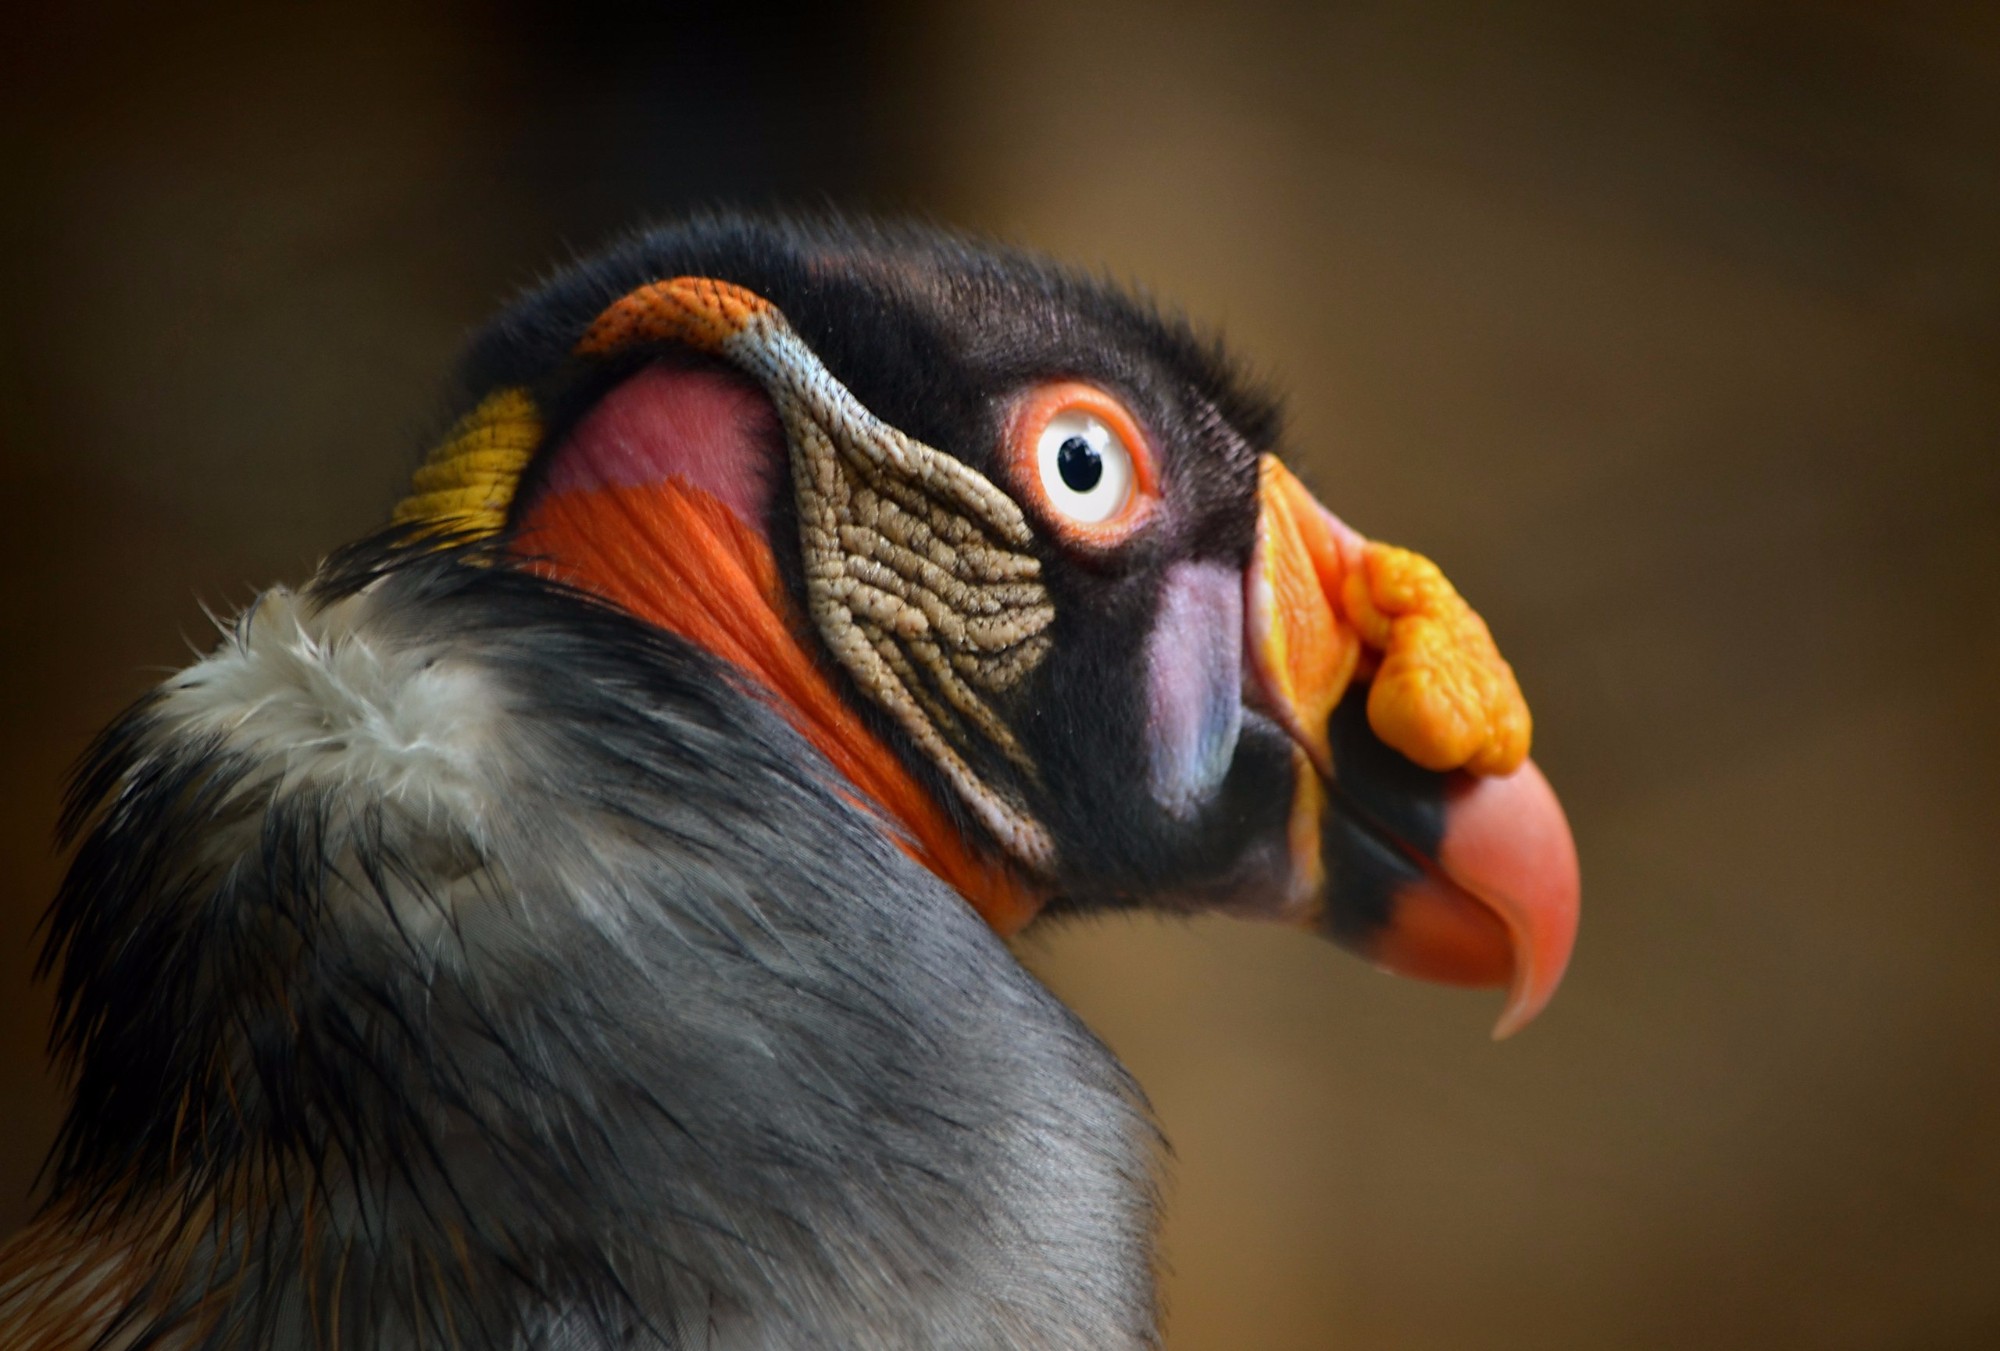 Удивительный птиц в зоопарке города Кали в Колумбии.